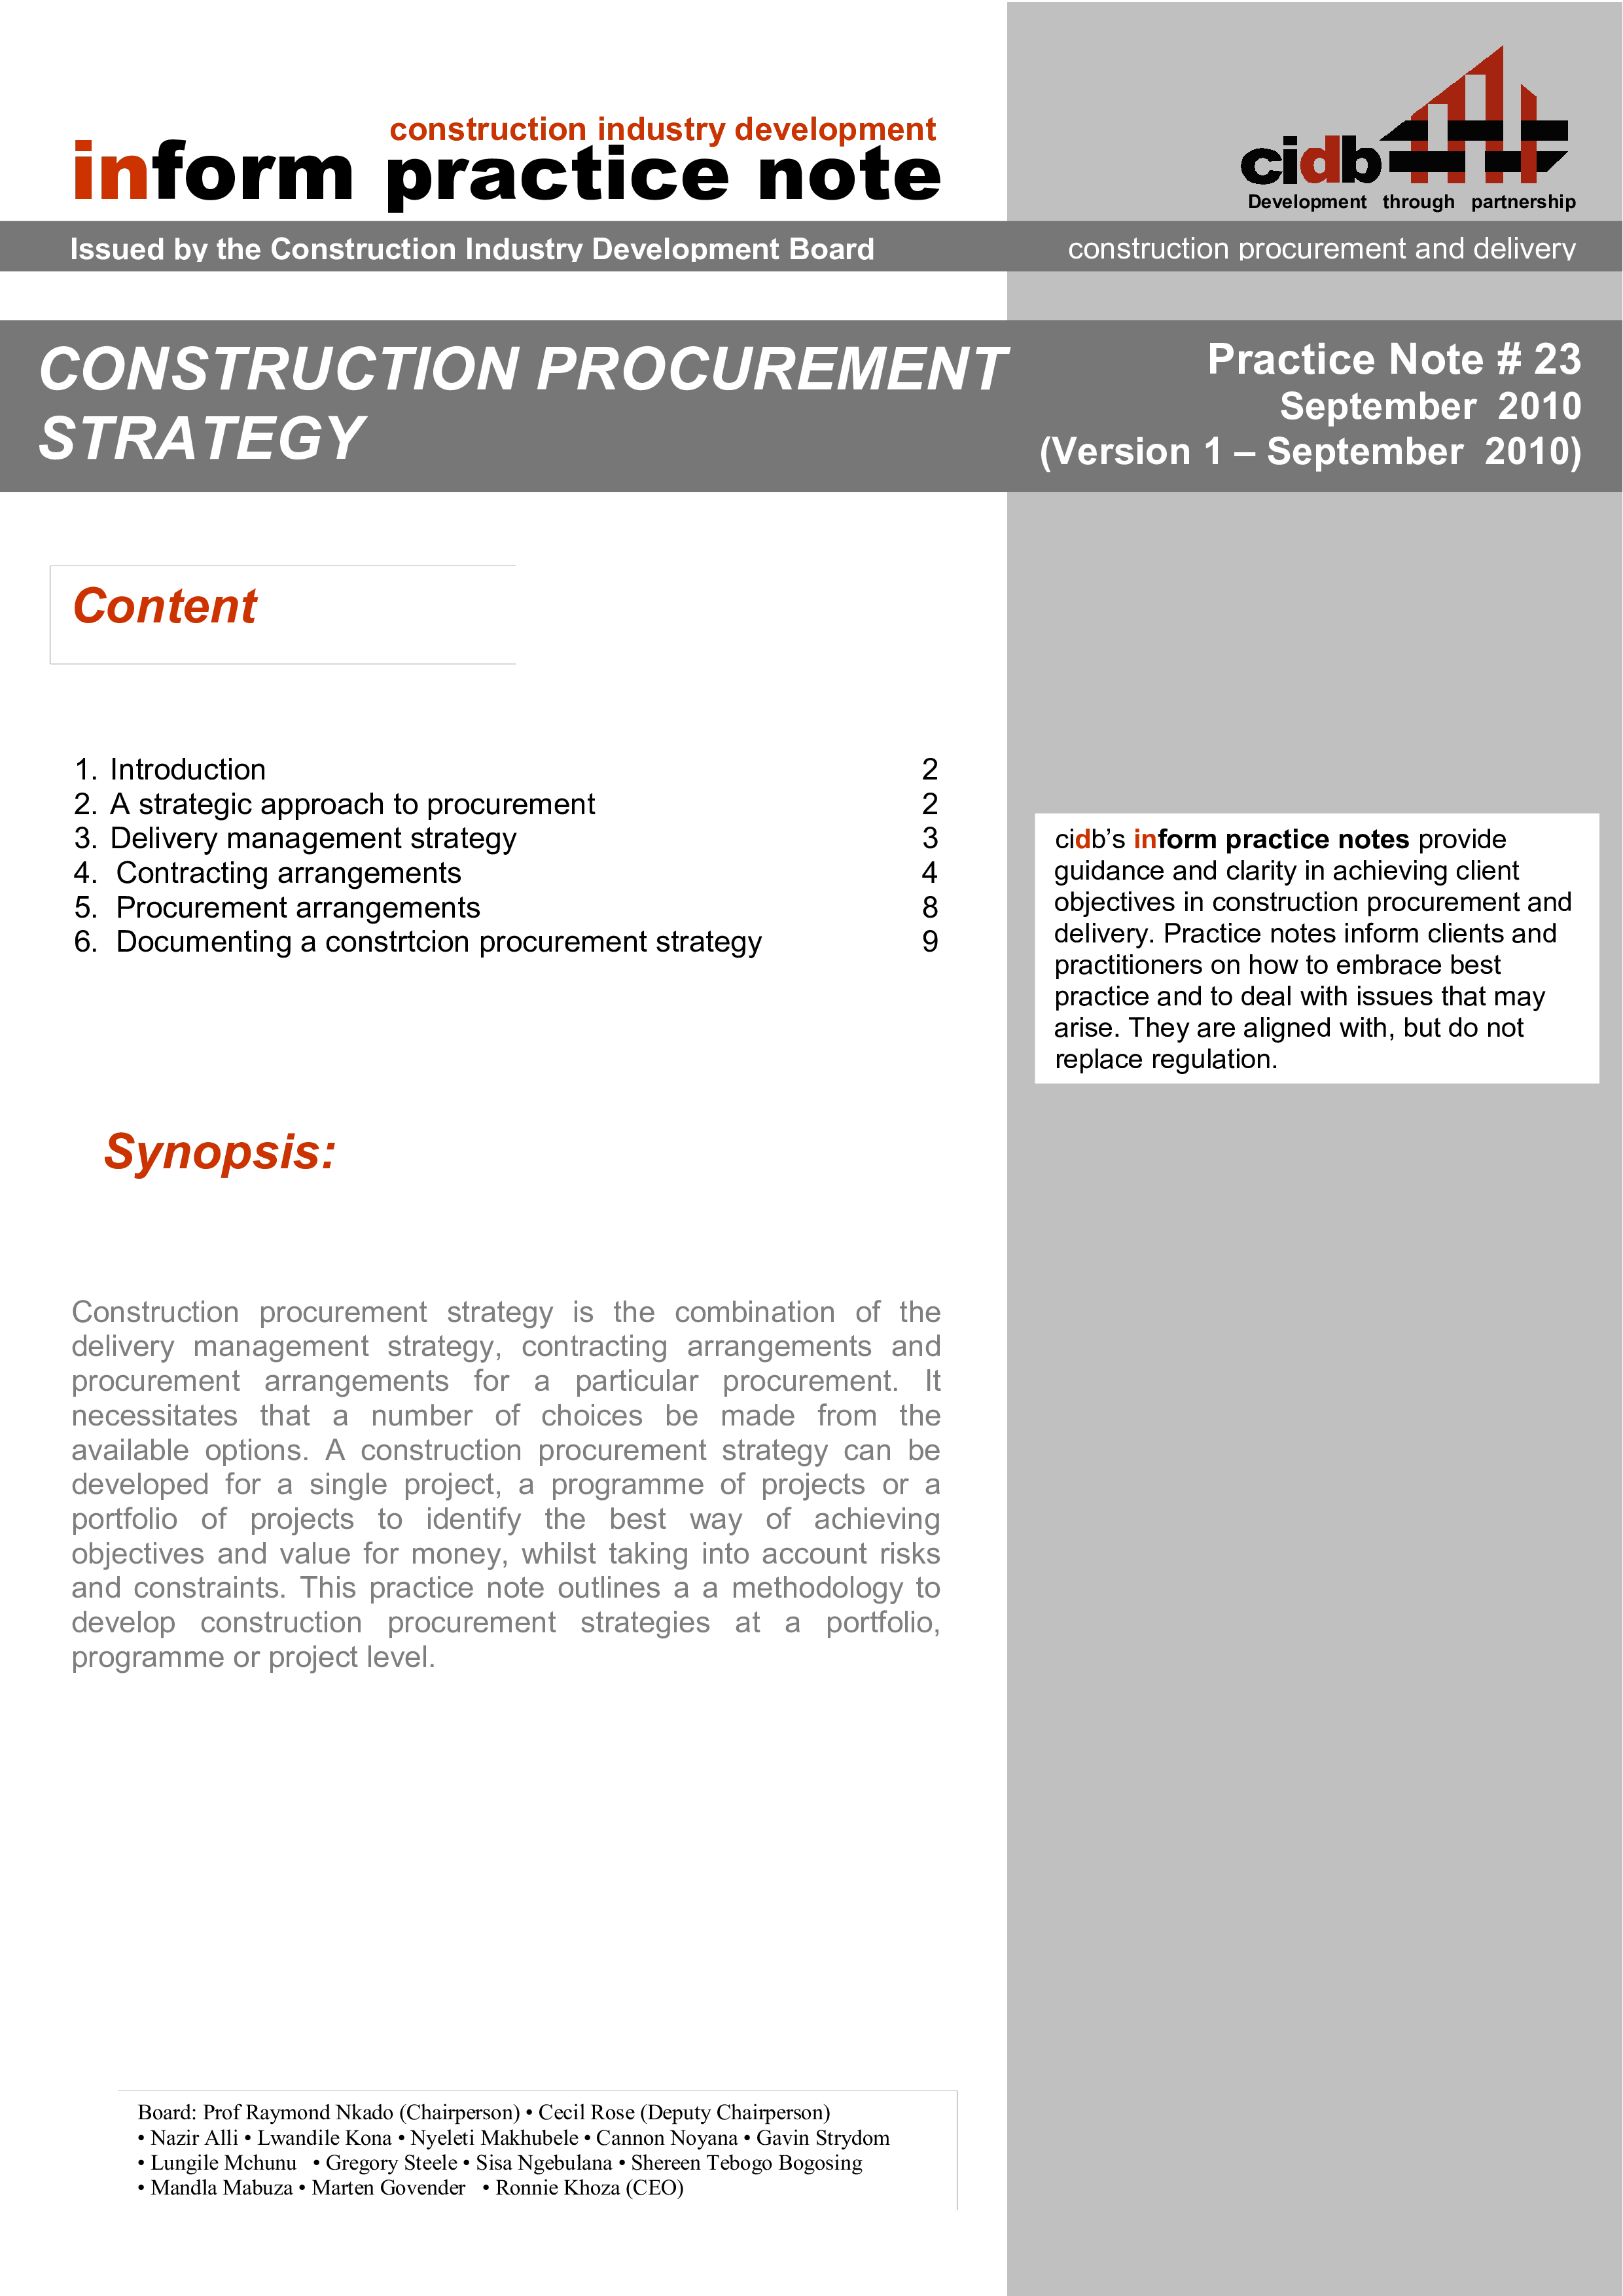 Construction Procurement Strategy main image